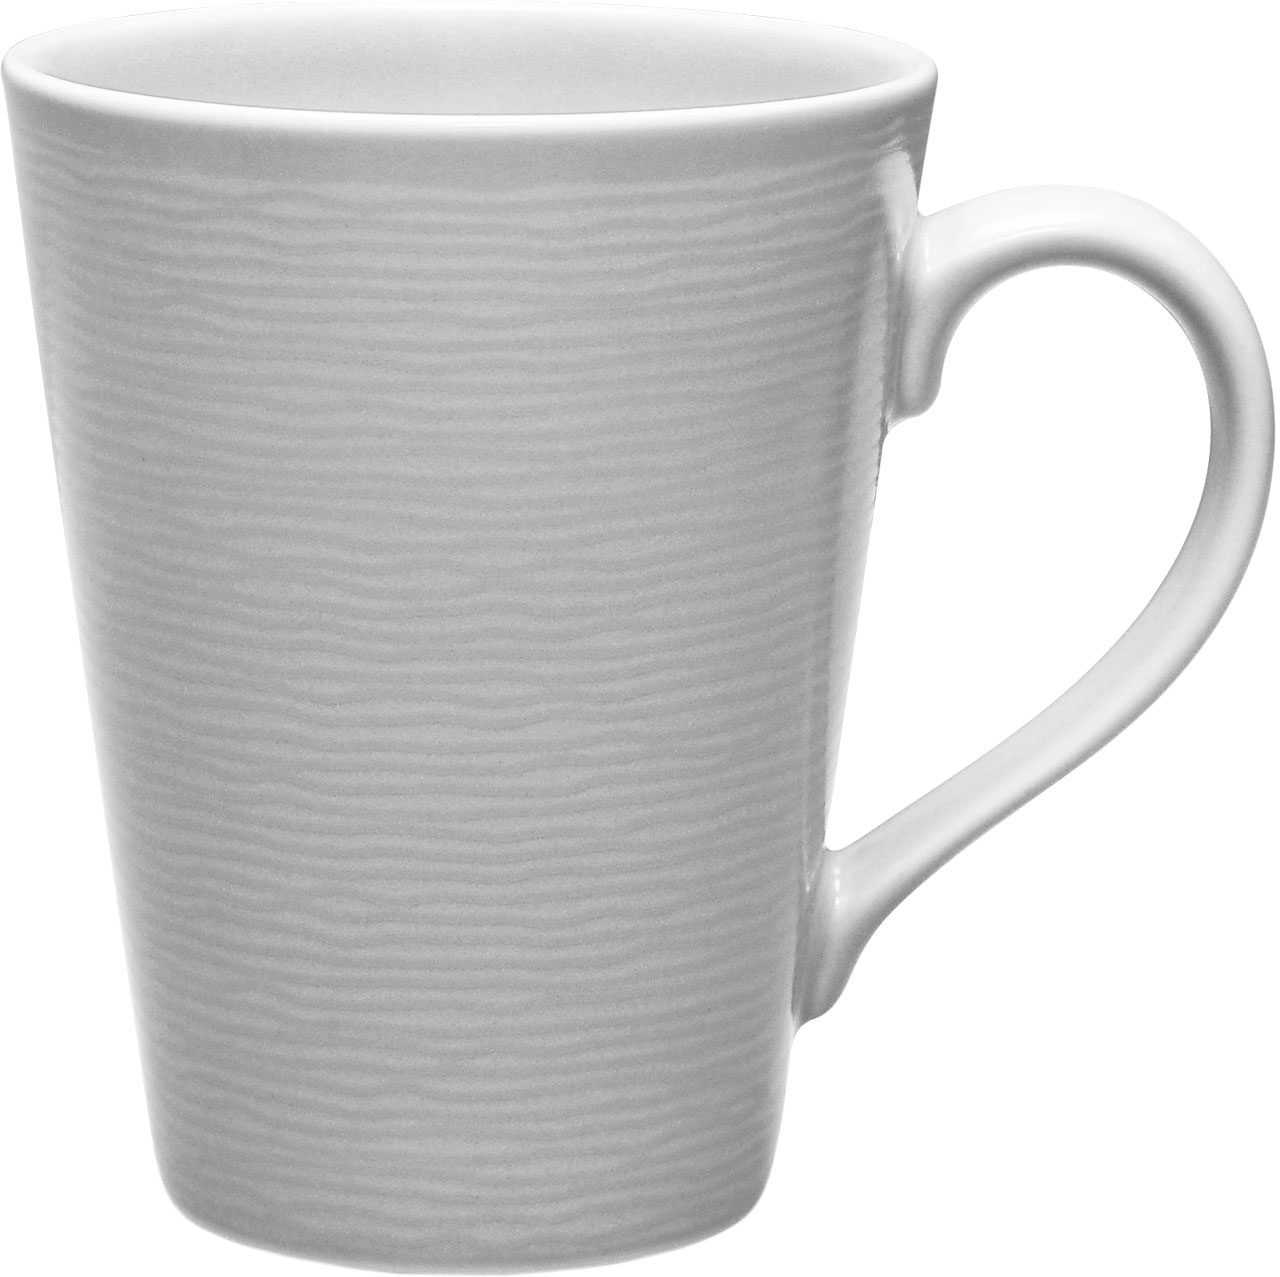 4 x Mugs (355mL)